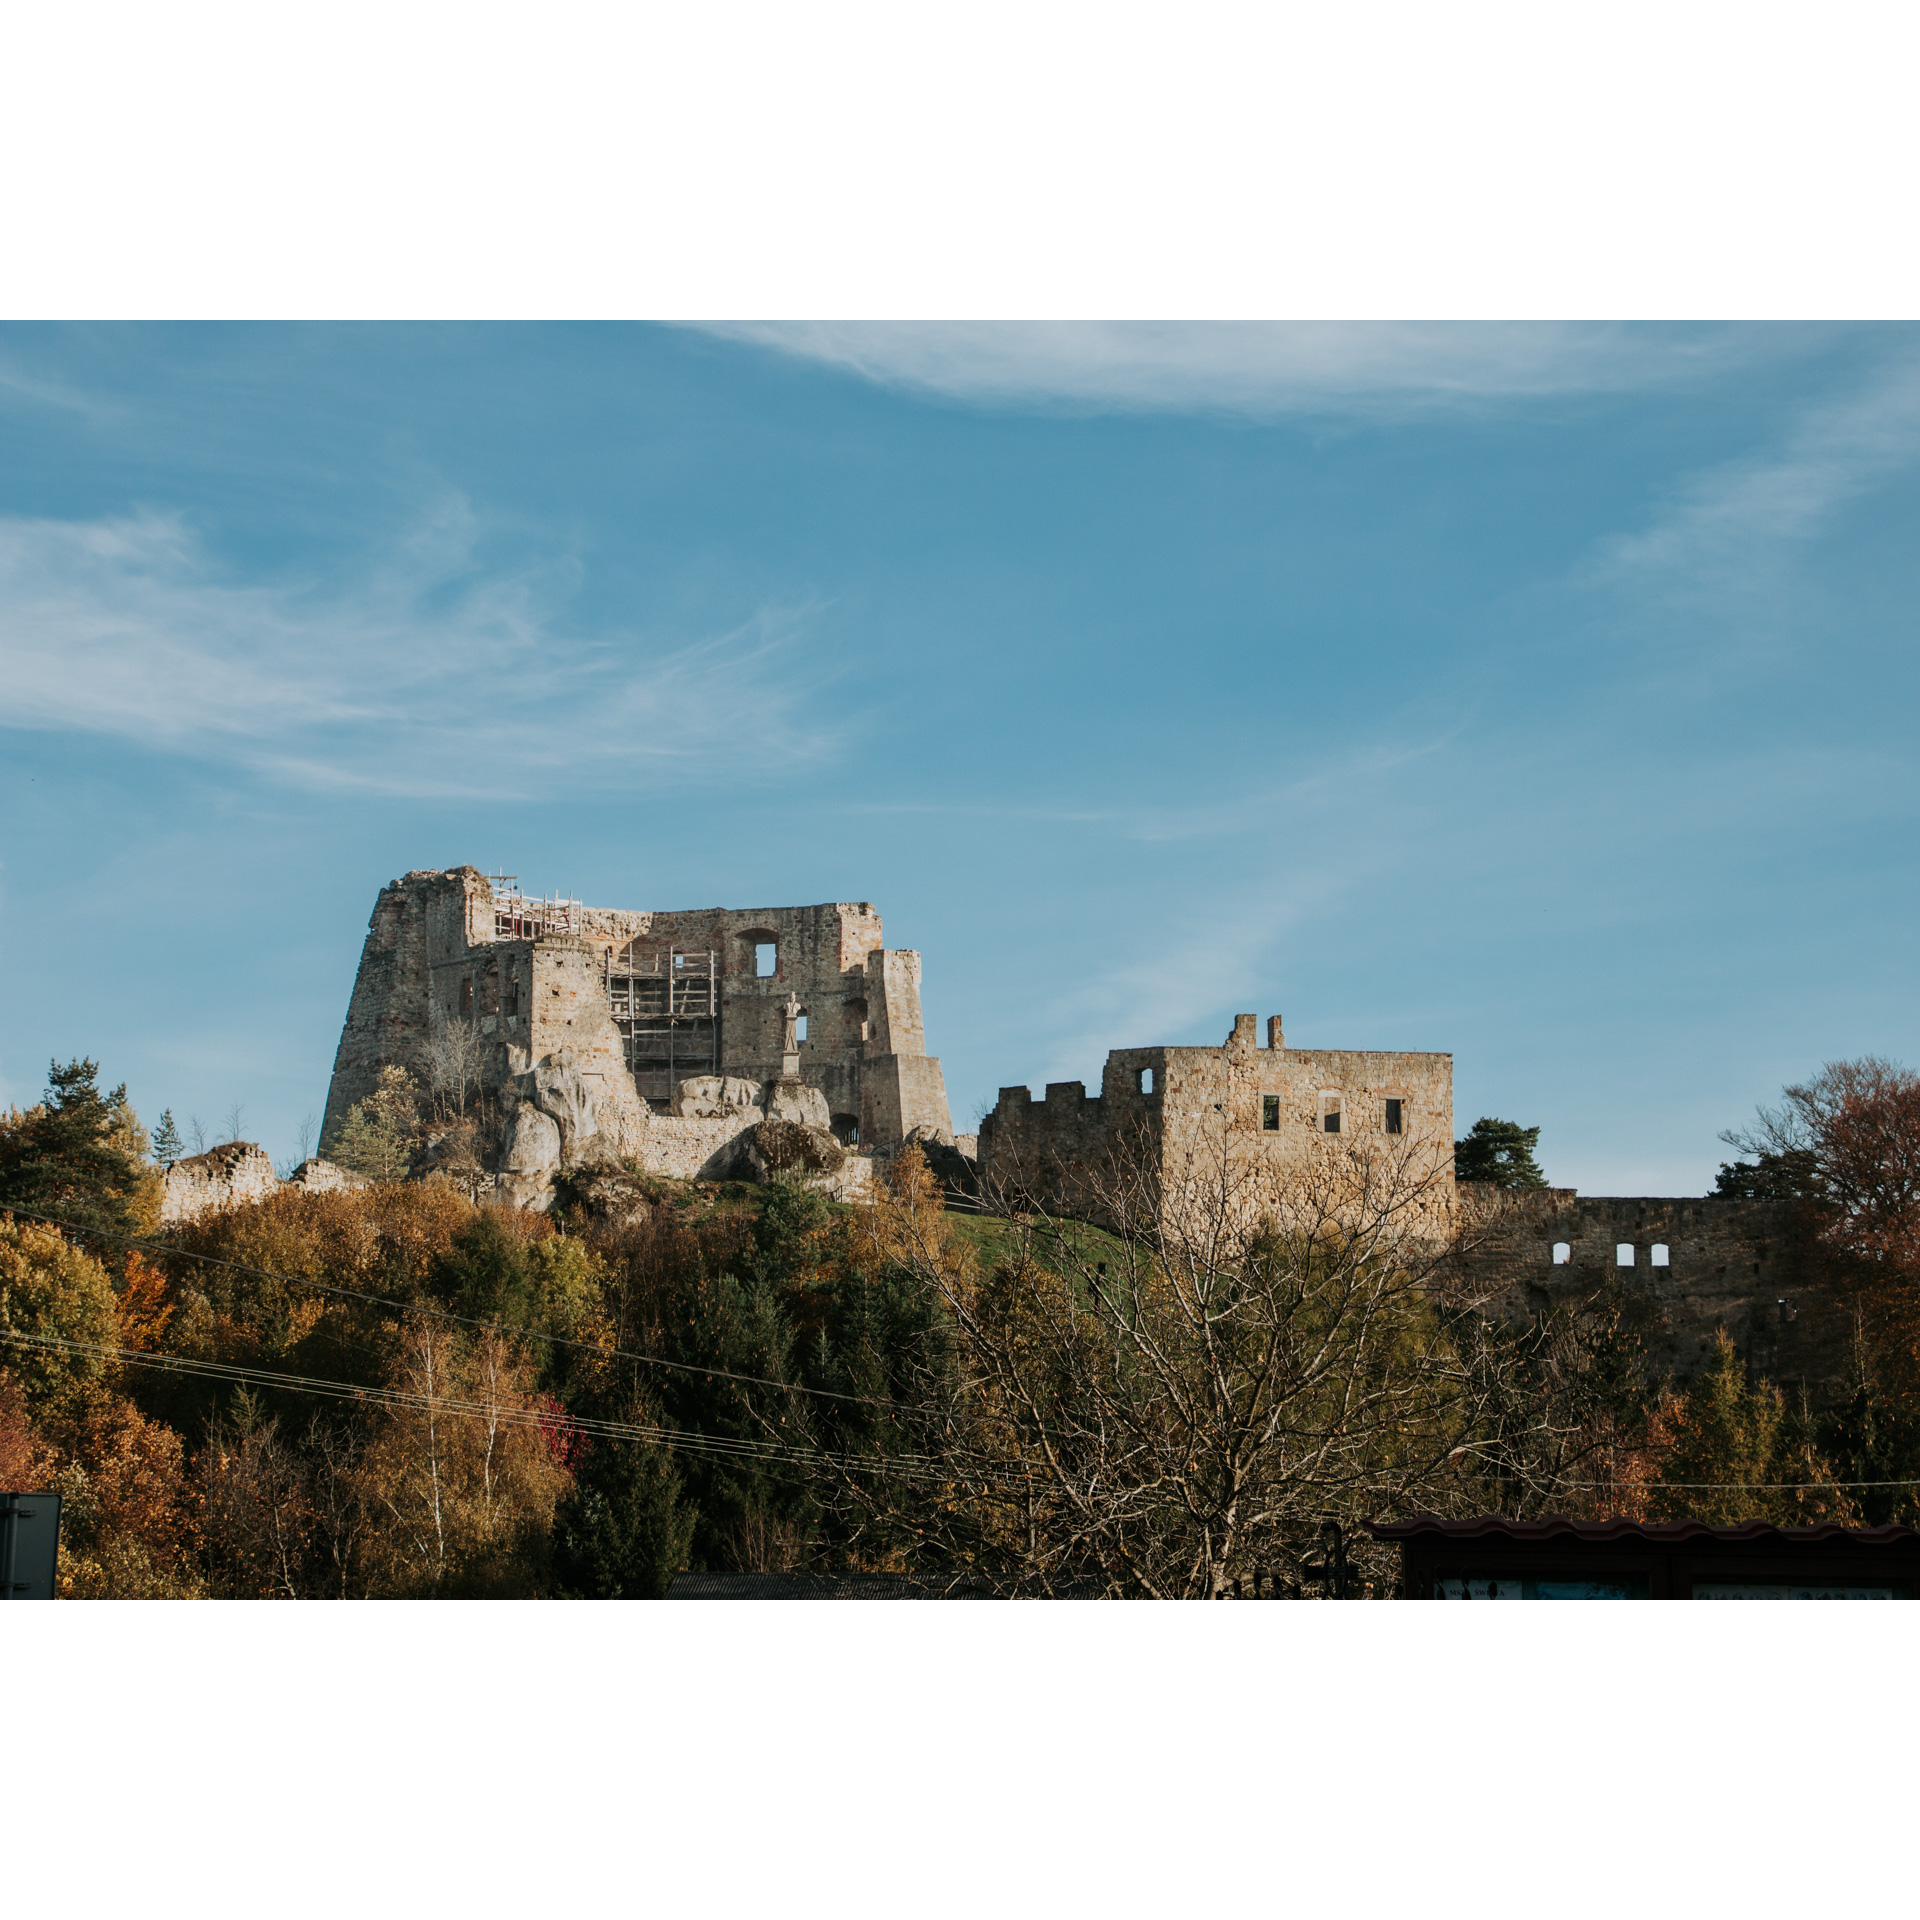 Widok na ruiny zamku na zalesionym wzgórzu na tle niebieskiego nieba